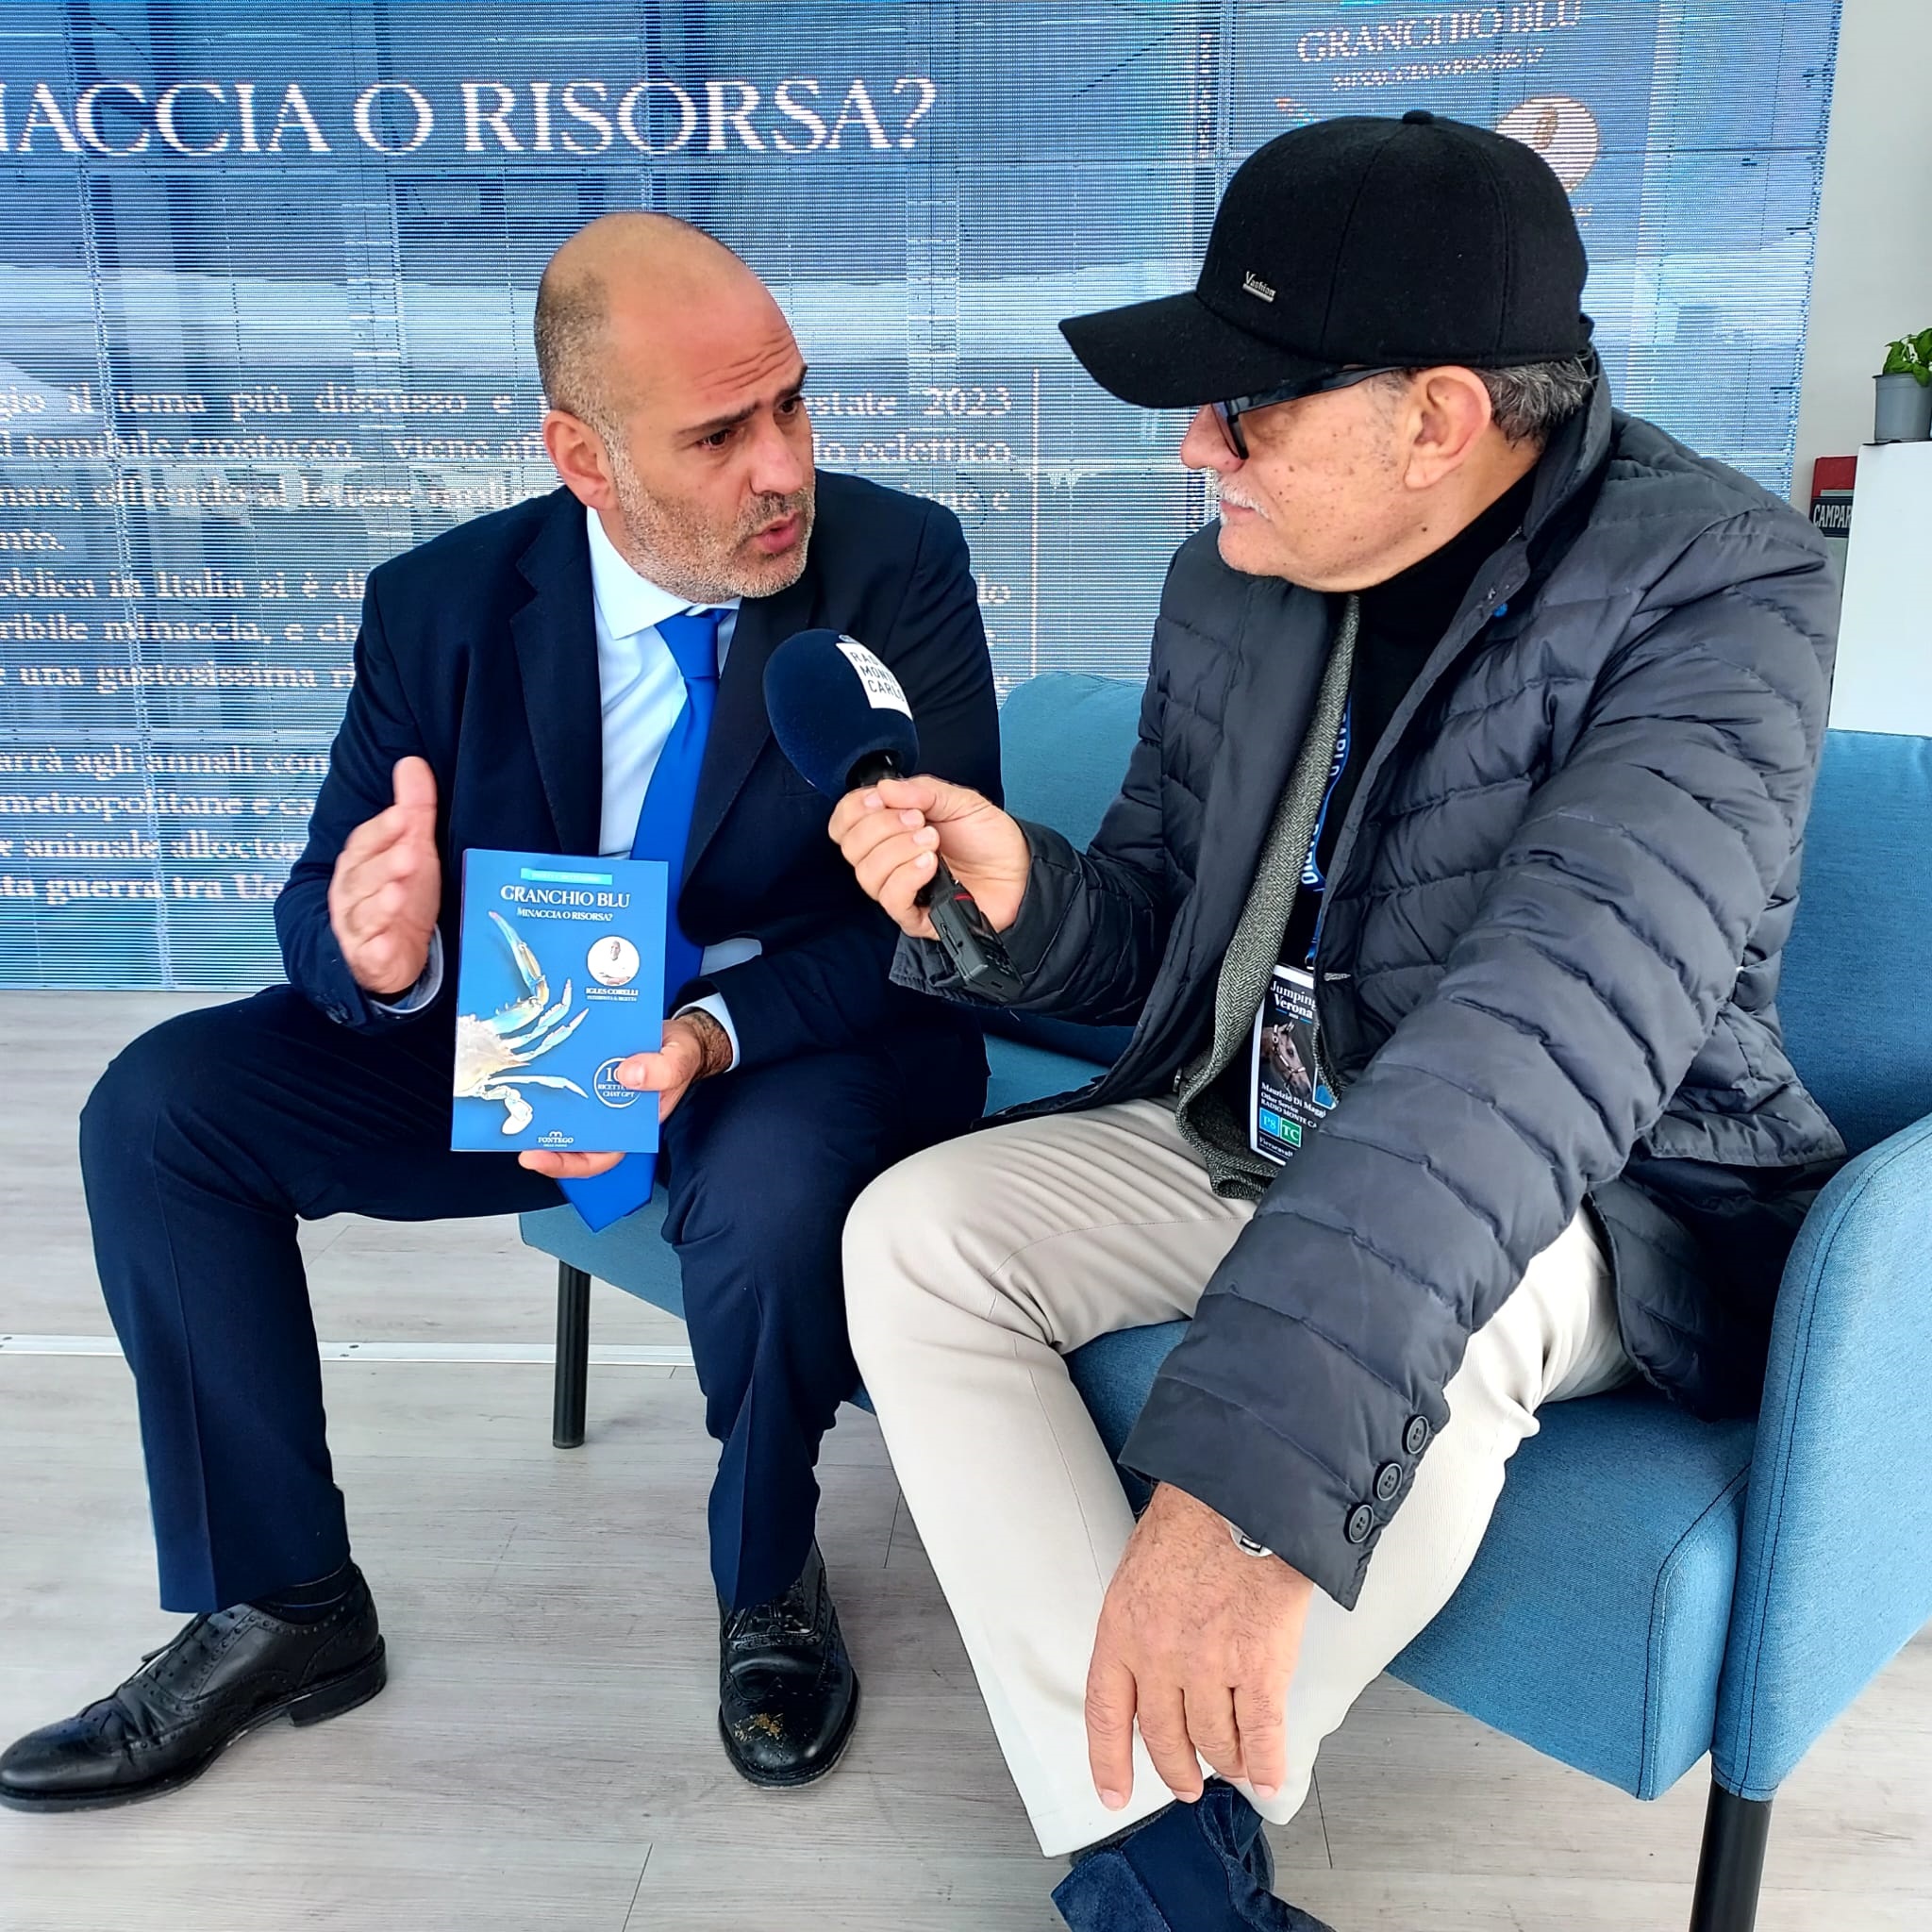 Granchio Blu Fieracavalli Verona Paolo Caratossidis intervista esclusiva Radio TMC